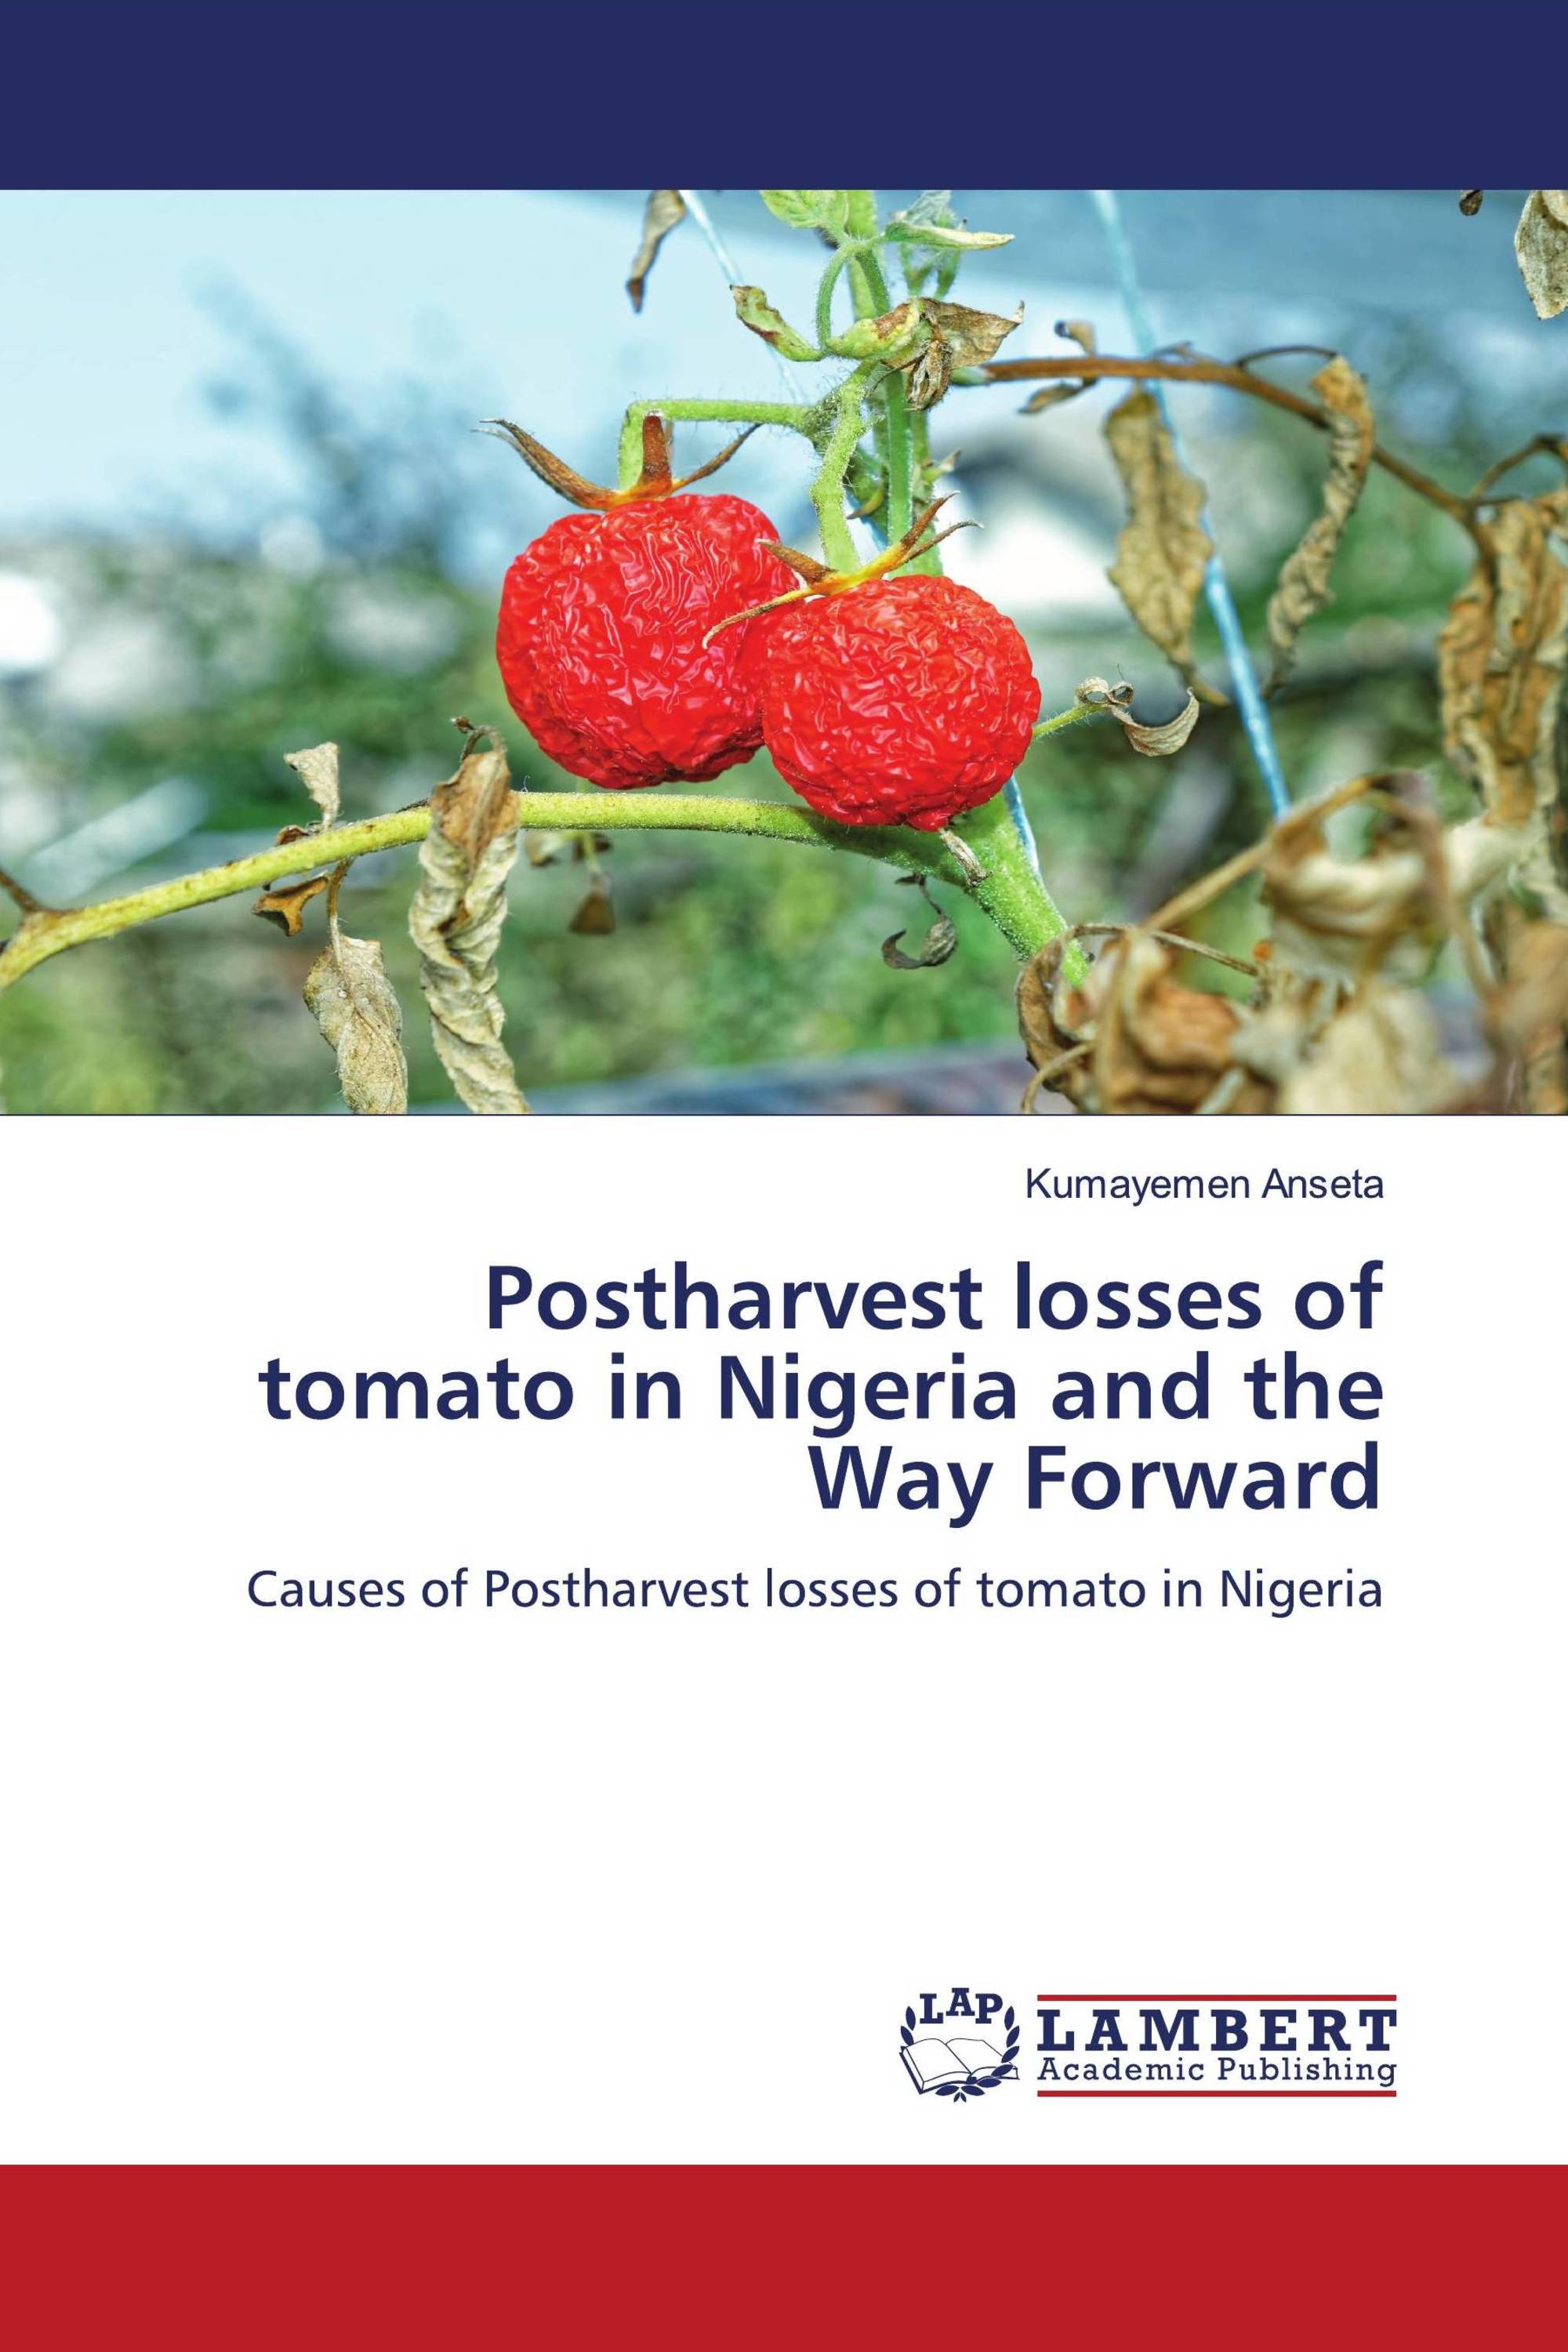 literature review on tomato in nigeria